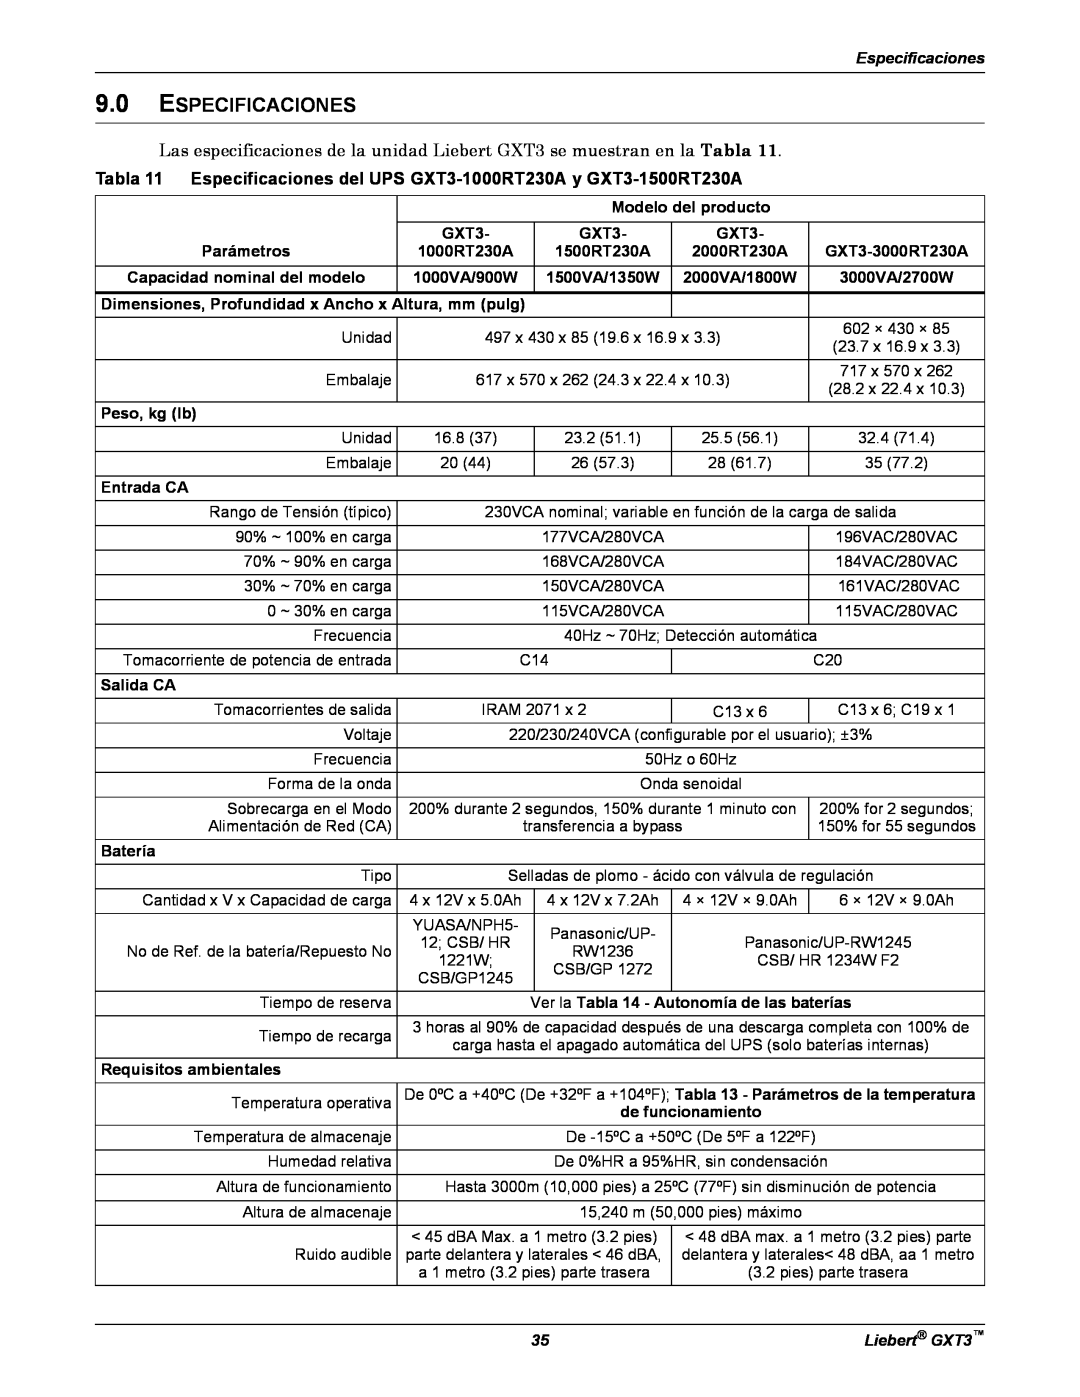 Emerson manual Tabla 11 Especificaciones del UPS GXT3-1000RT230A y GXT3-1500RT230A, Liebert GXT3 